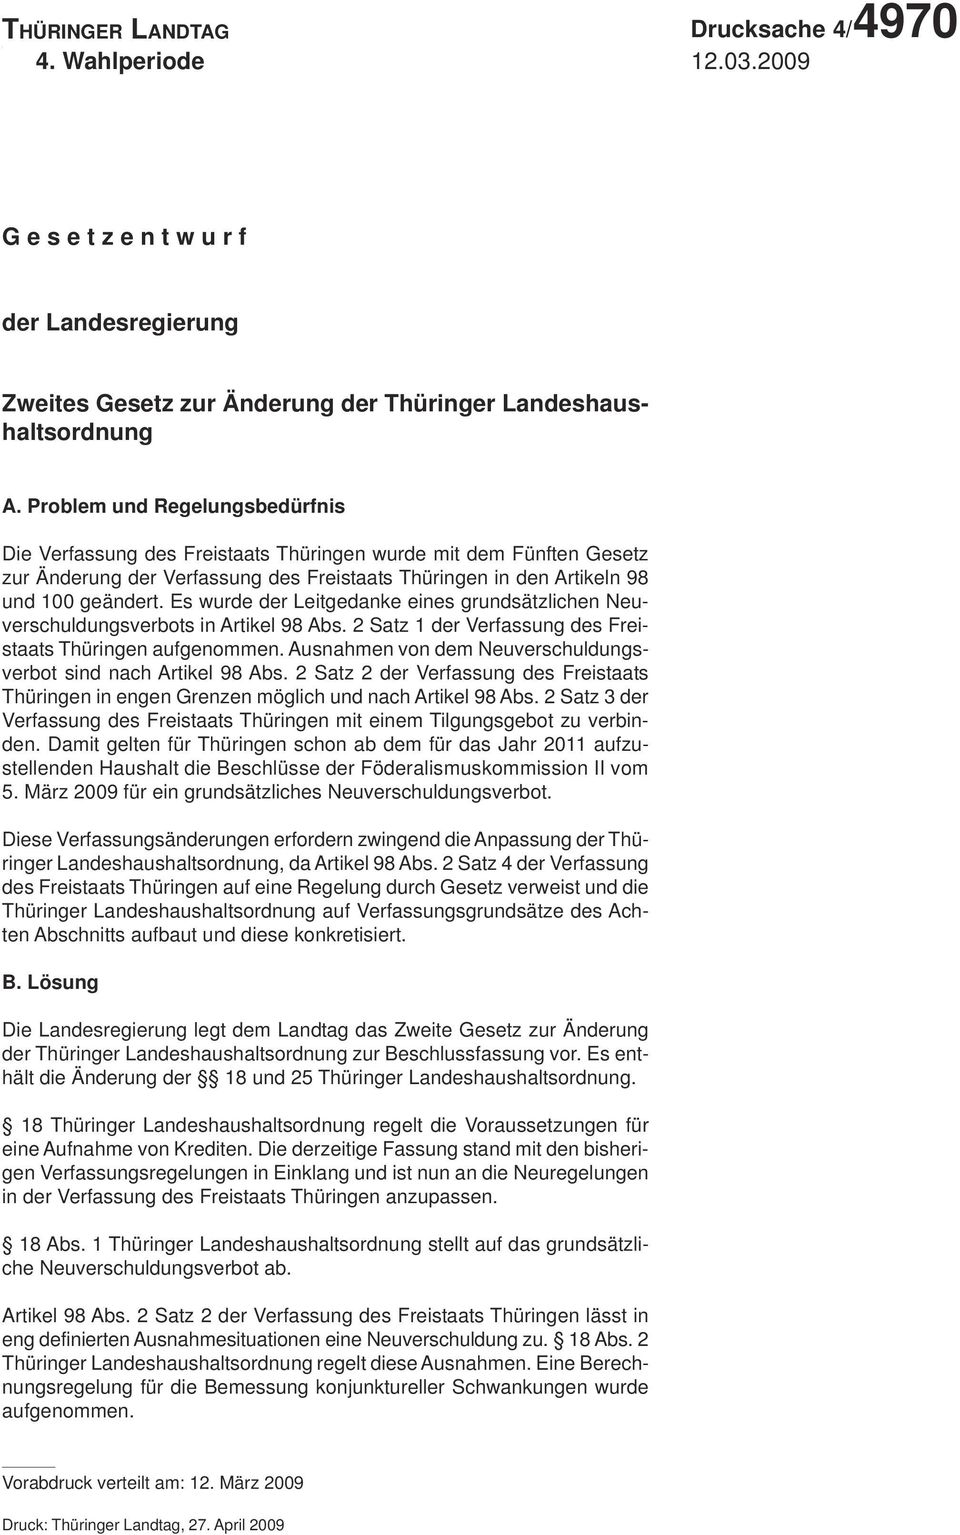 Problem und Regelungsbedürfnis Die Verfassung des Freistaats Thüringen wurde mit dem Fünften Gesetz zur Änderung der Verfassung des Freistaats Thüringen in den Artikeln 98 und 100 geändert.